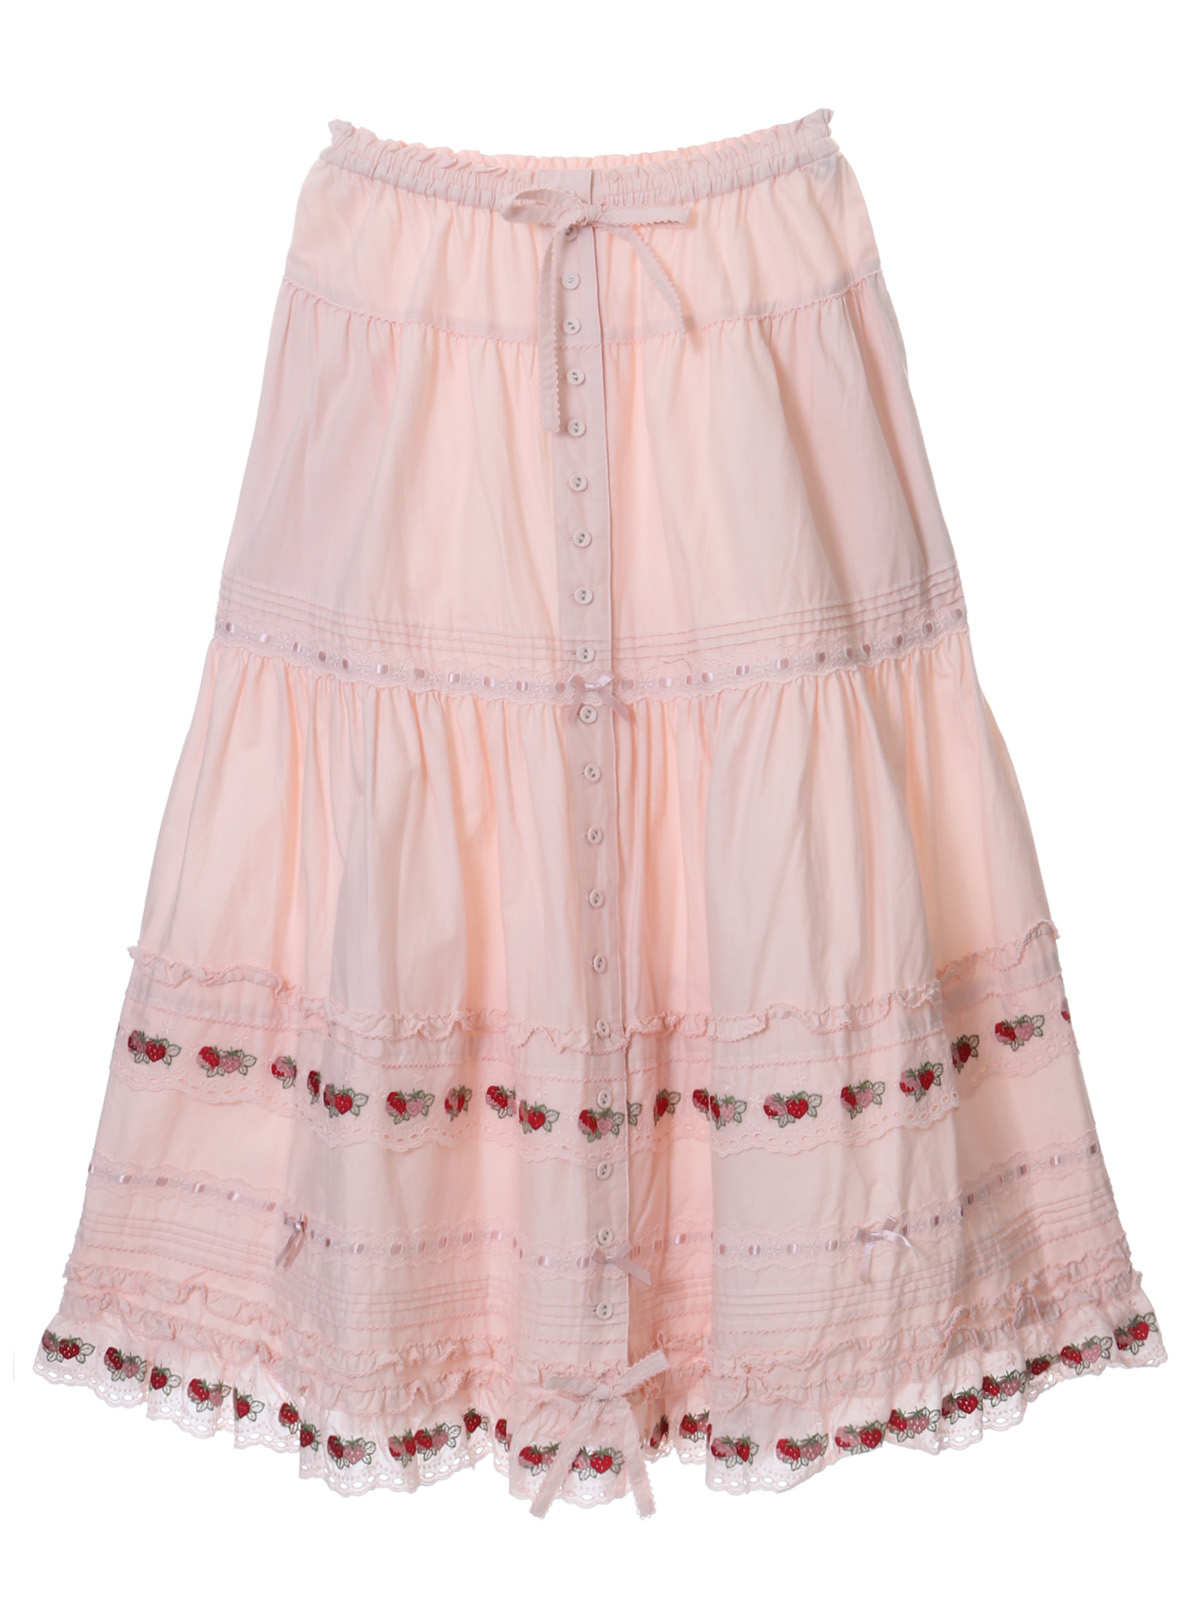 【新品未使用】ピンクハウス ピンク いちご刺繍レーススカート/定価63,800円新品未使用タグ無し